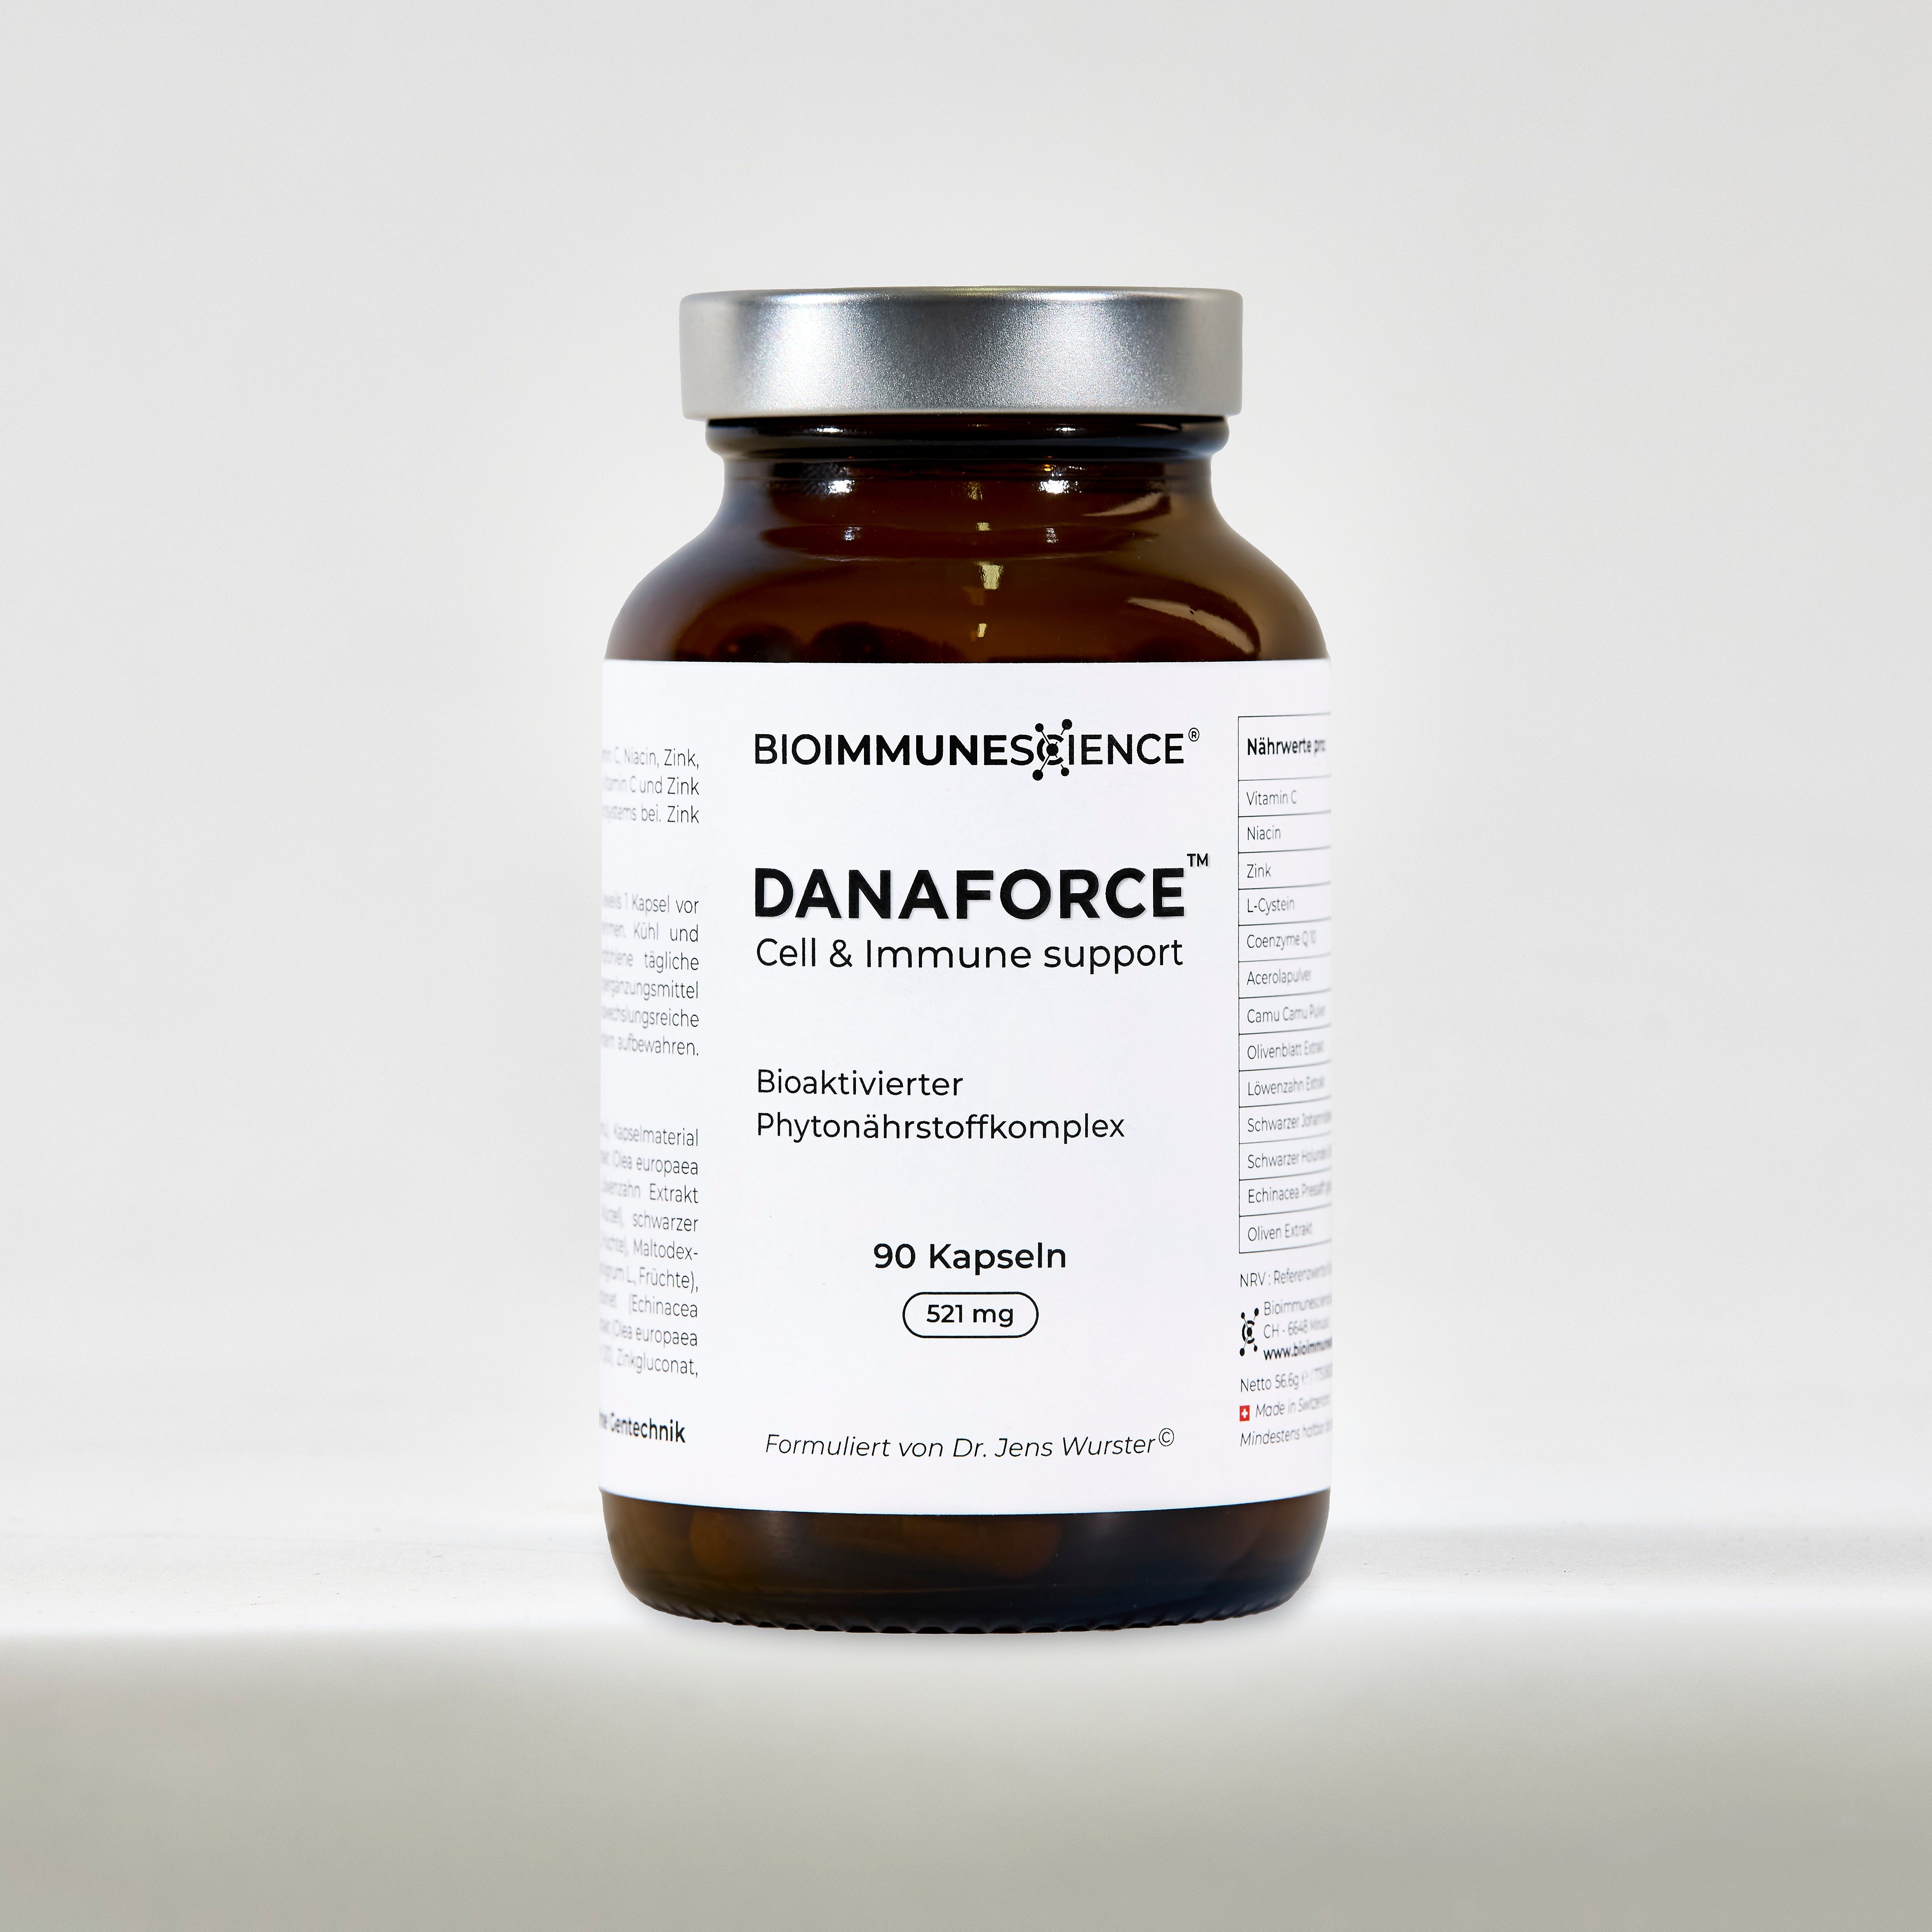 Entdecke die wertvollen Inhaltsstoffe von Danaforce®. Danaforce® enthält eine speziell abgestimmte Kombination aus verschiedenen Vitaminen, Mineralstoffen, Phytonährstoffen und Pflanzenextrakten, welche die Funktionsfähigkeit des Immunsystems und den Zellschutz unterstützen.